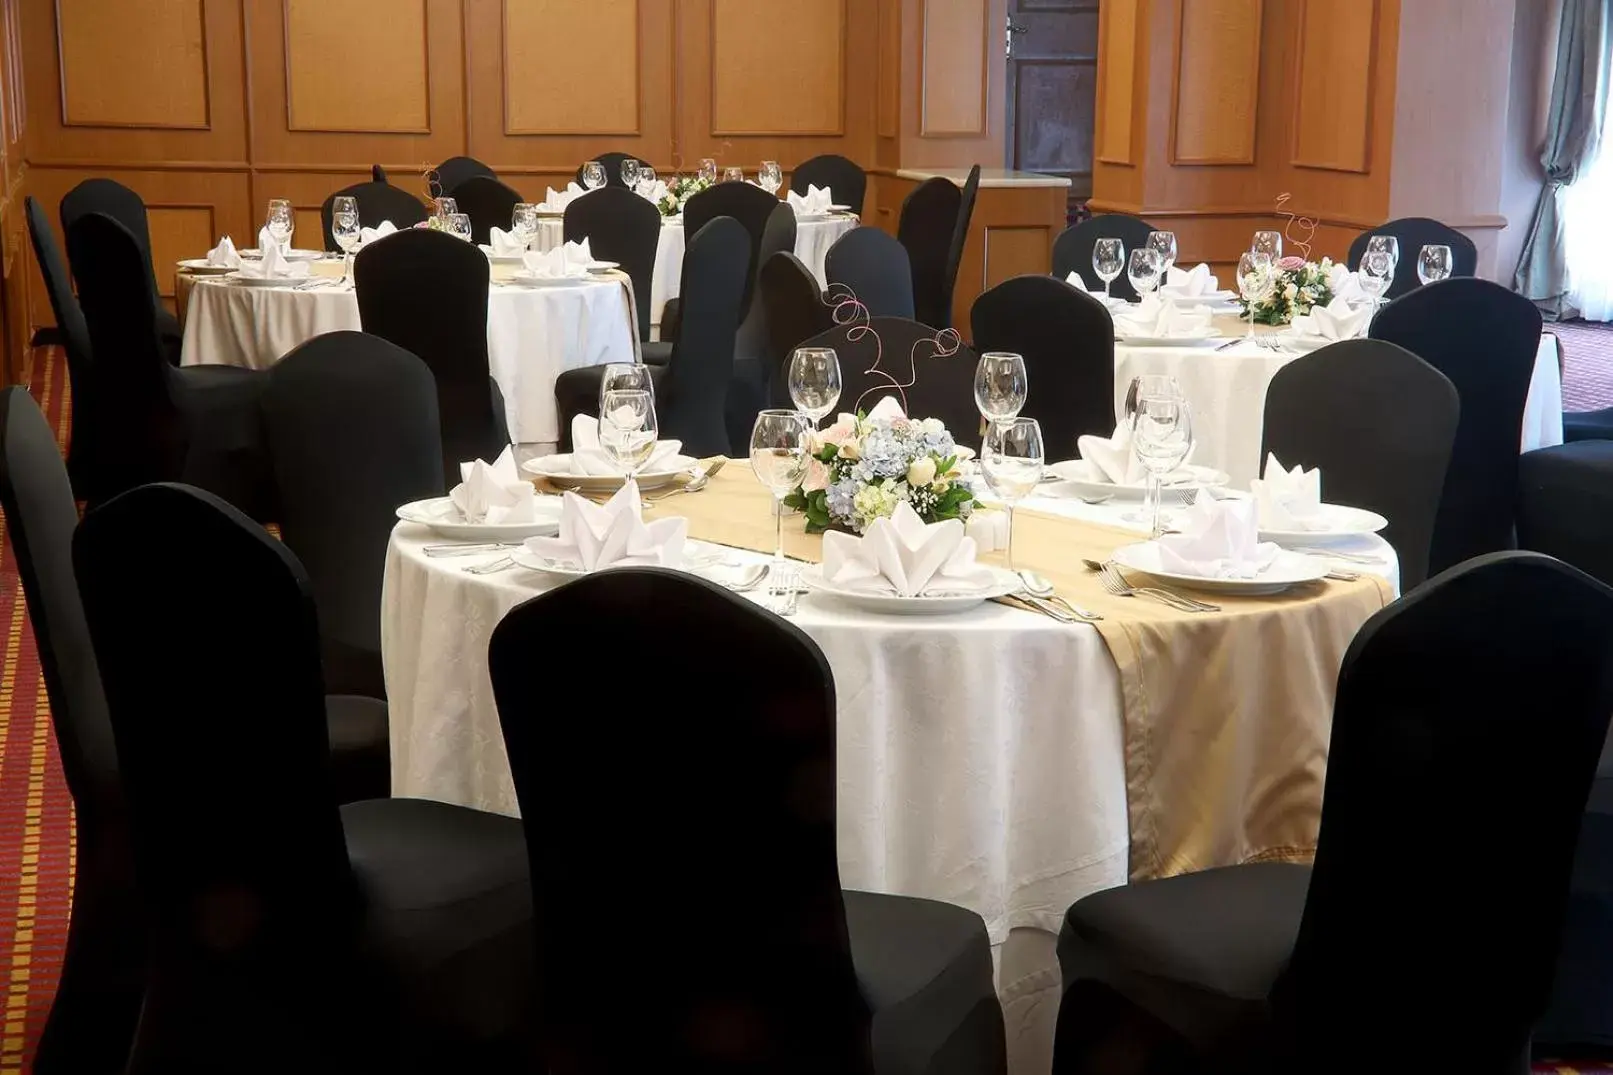 Banquet/Function facilities, Banquet Facilities in Emporio Reforma